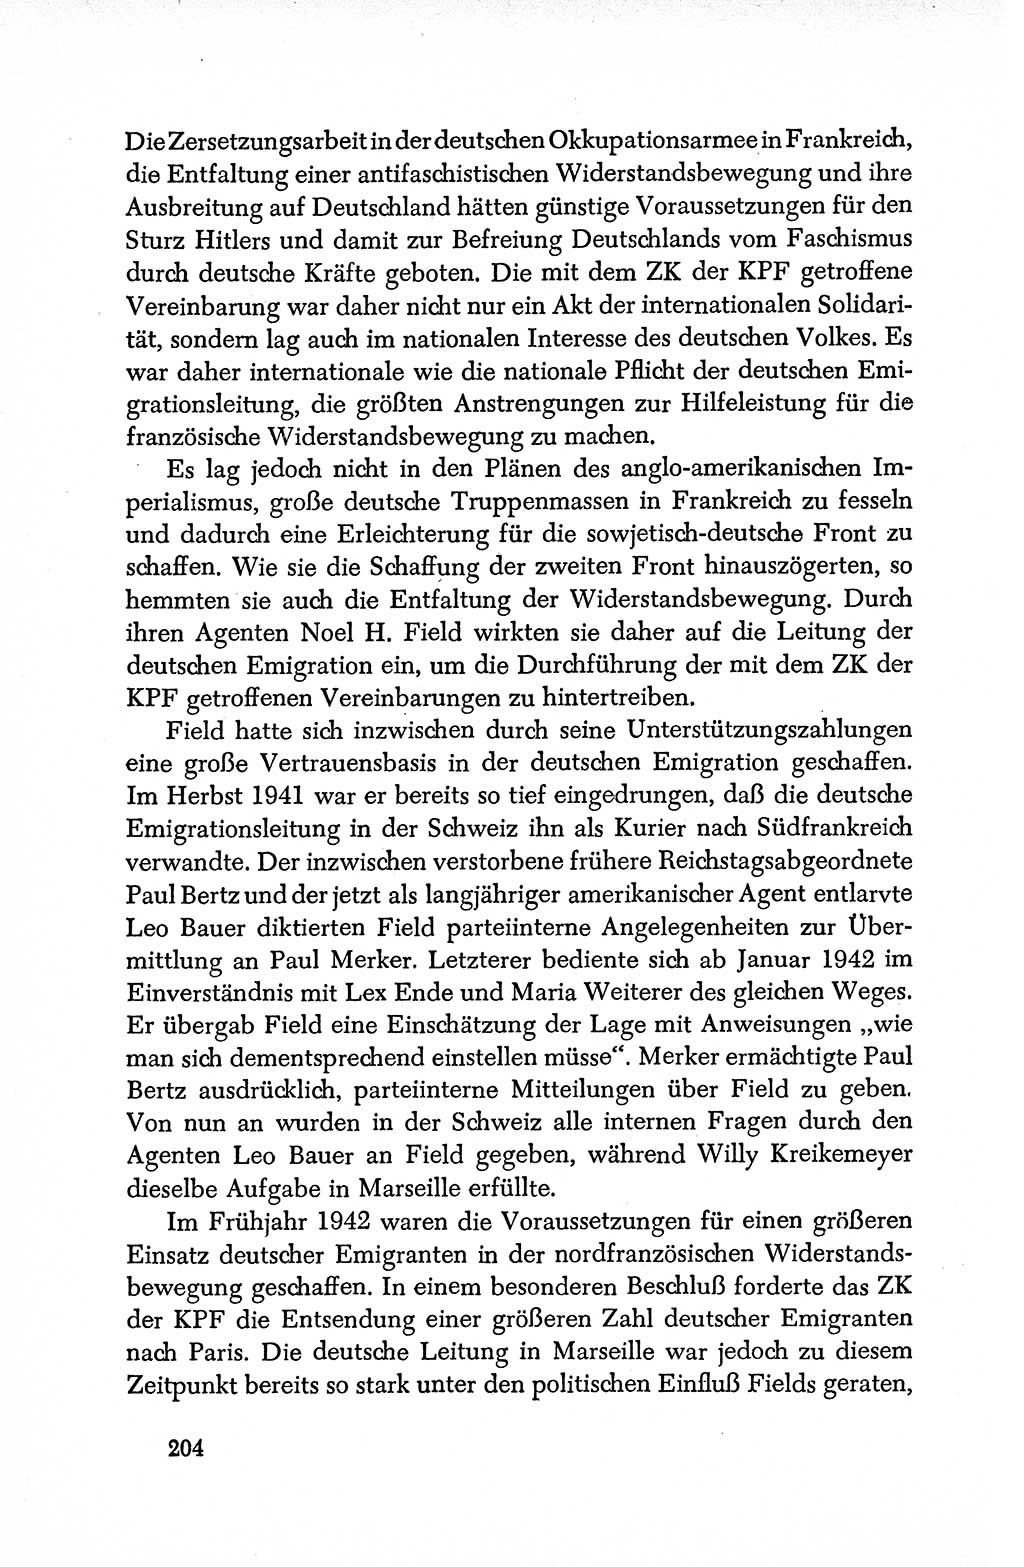 Dokumente der Sozialistischen Einheitspartei Deutschlands (SED) [Deutsche Demokratische Republik (DDR)] 1950-1952, Seite 204 (Dok. SED DDR 1950-1952, S. 204)